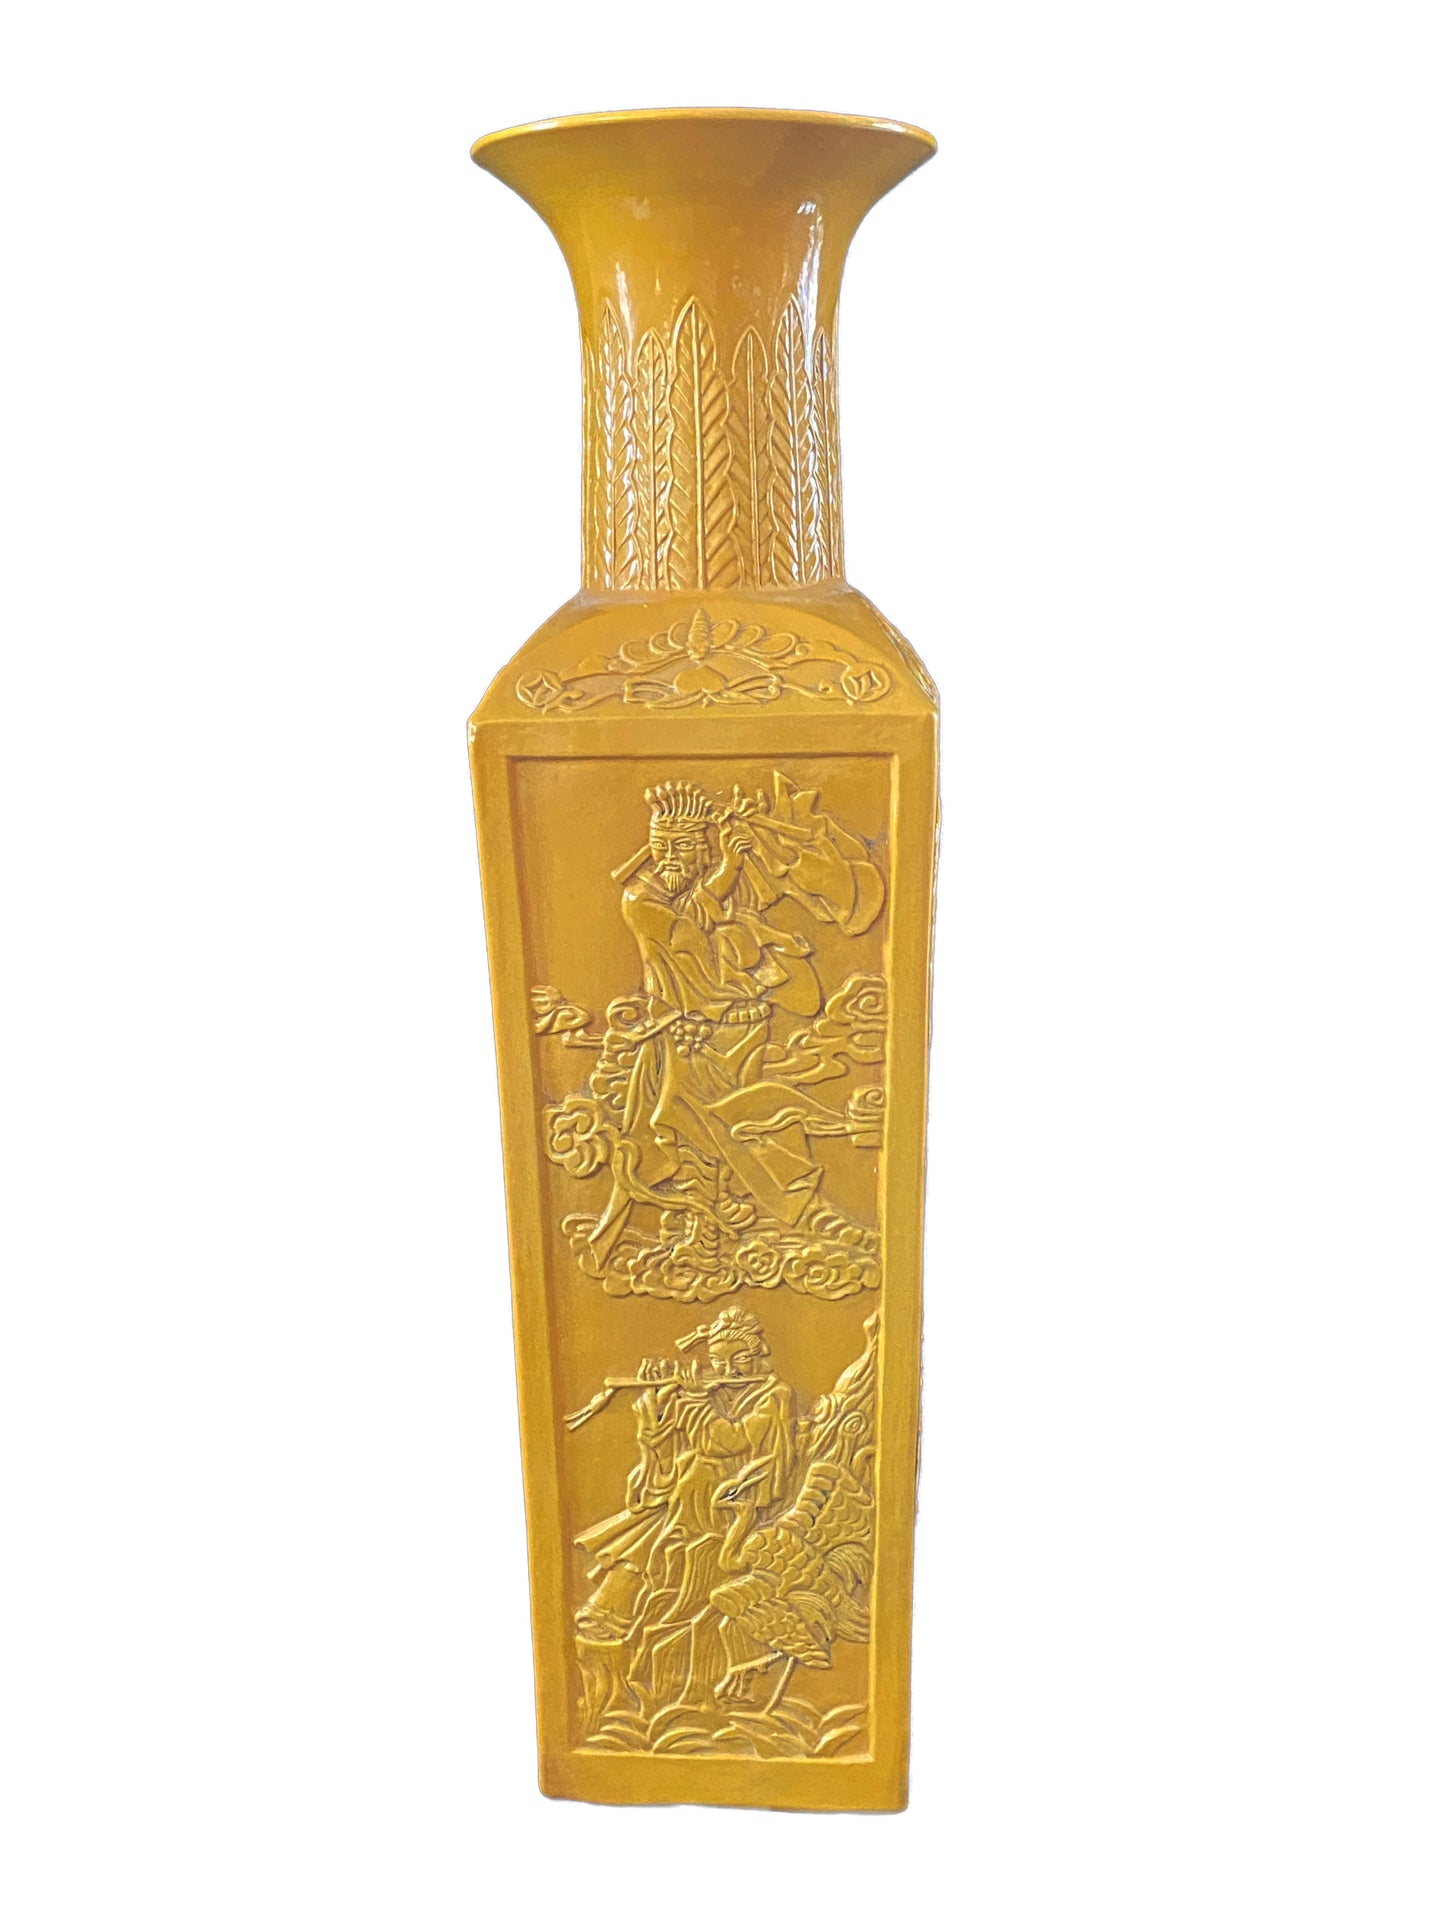 #3171 Chinoiserie Large Famille Jaune Style Vase.25"H